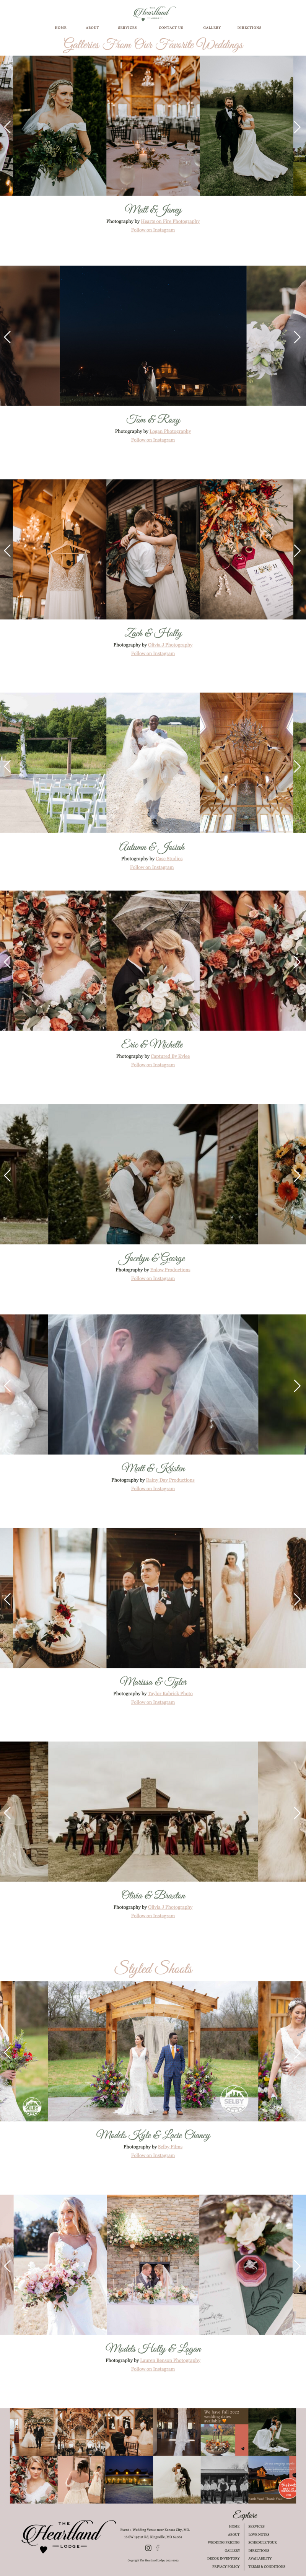 website design for a wedding venue